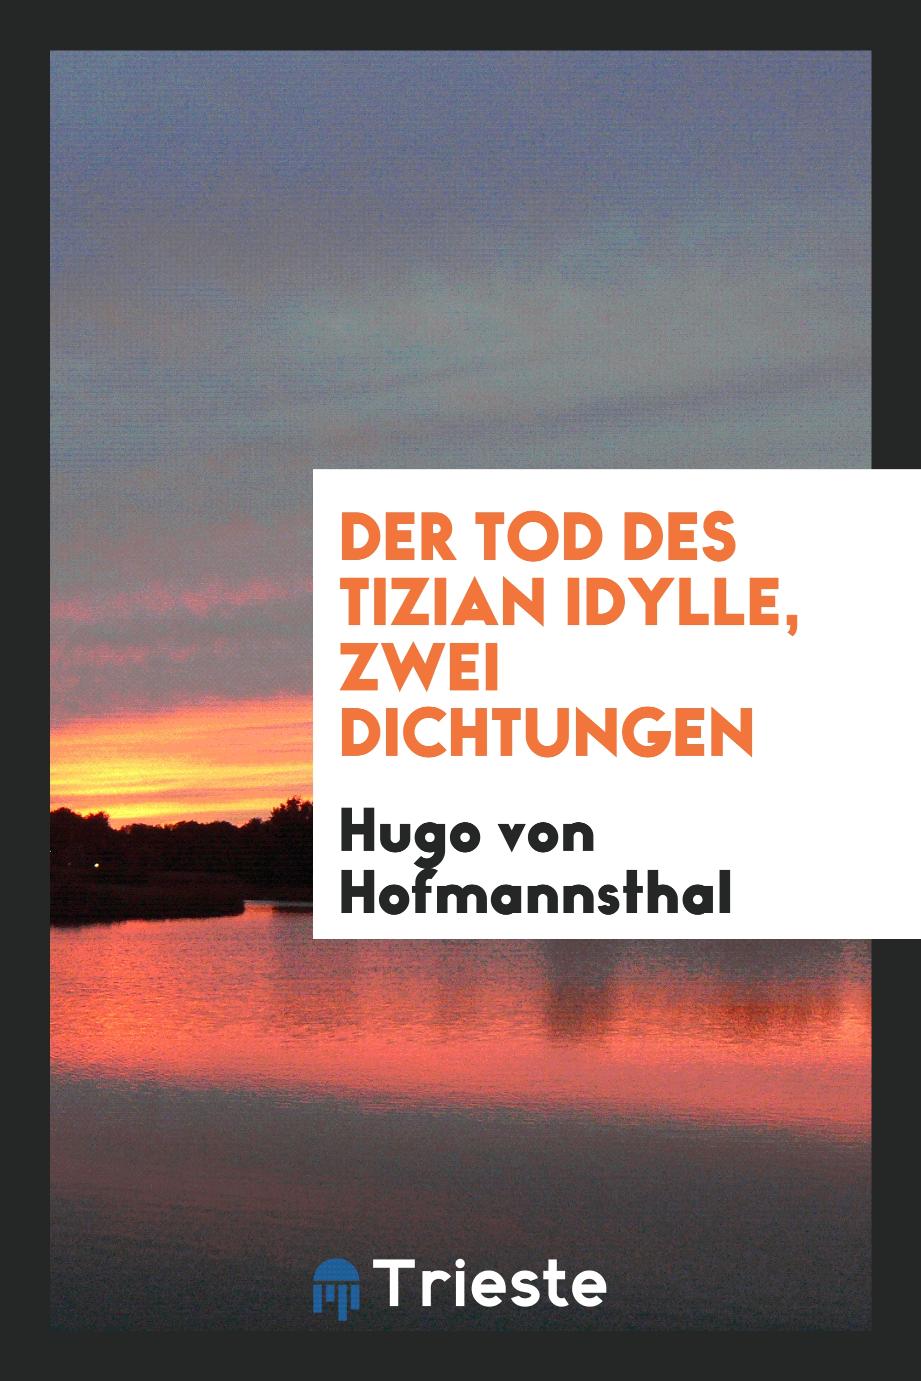 Hugo Von Hofmannsthal - Der Tod des Tizian Idylle, Zwei Dichtungen